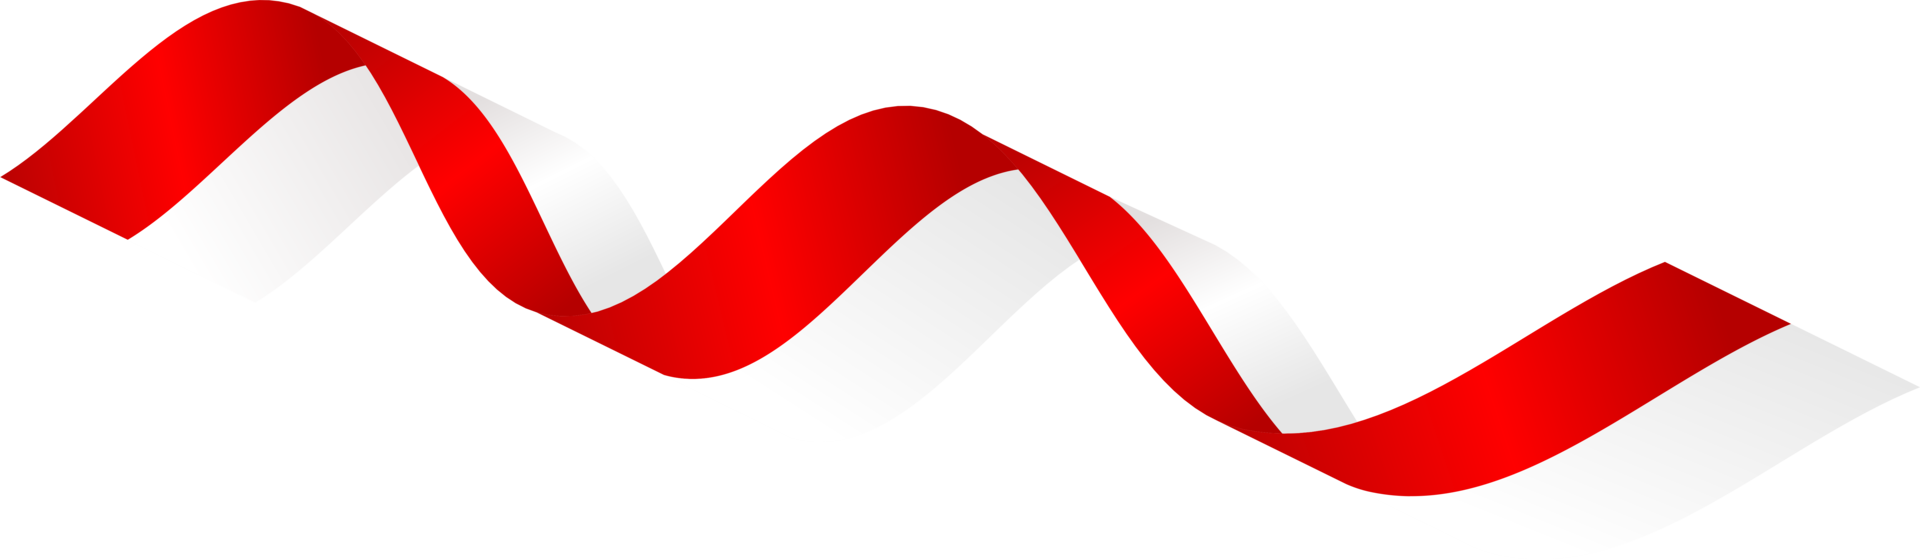 Indonésia bandeira fita, indonésio bandeira fita vermelho branco transparente png